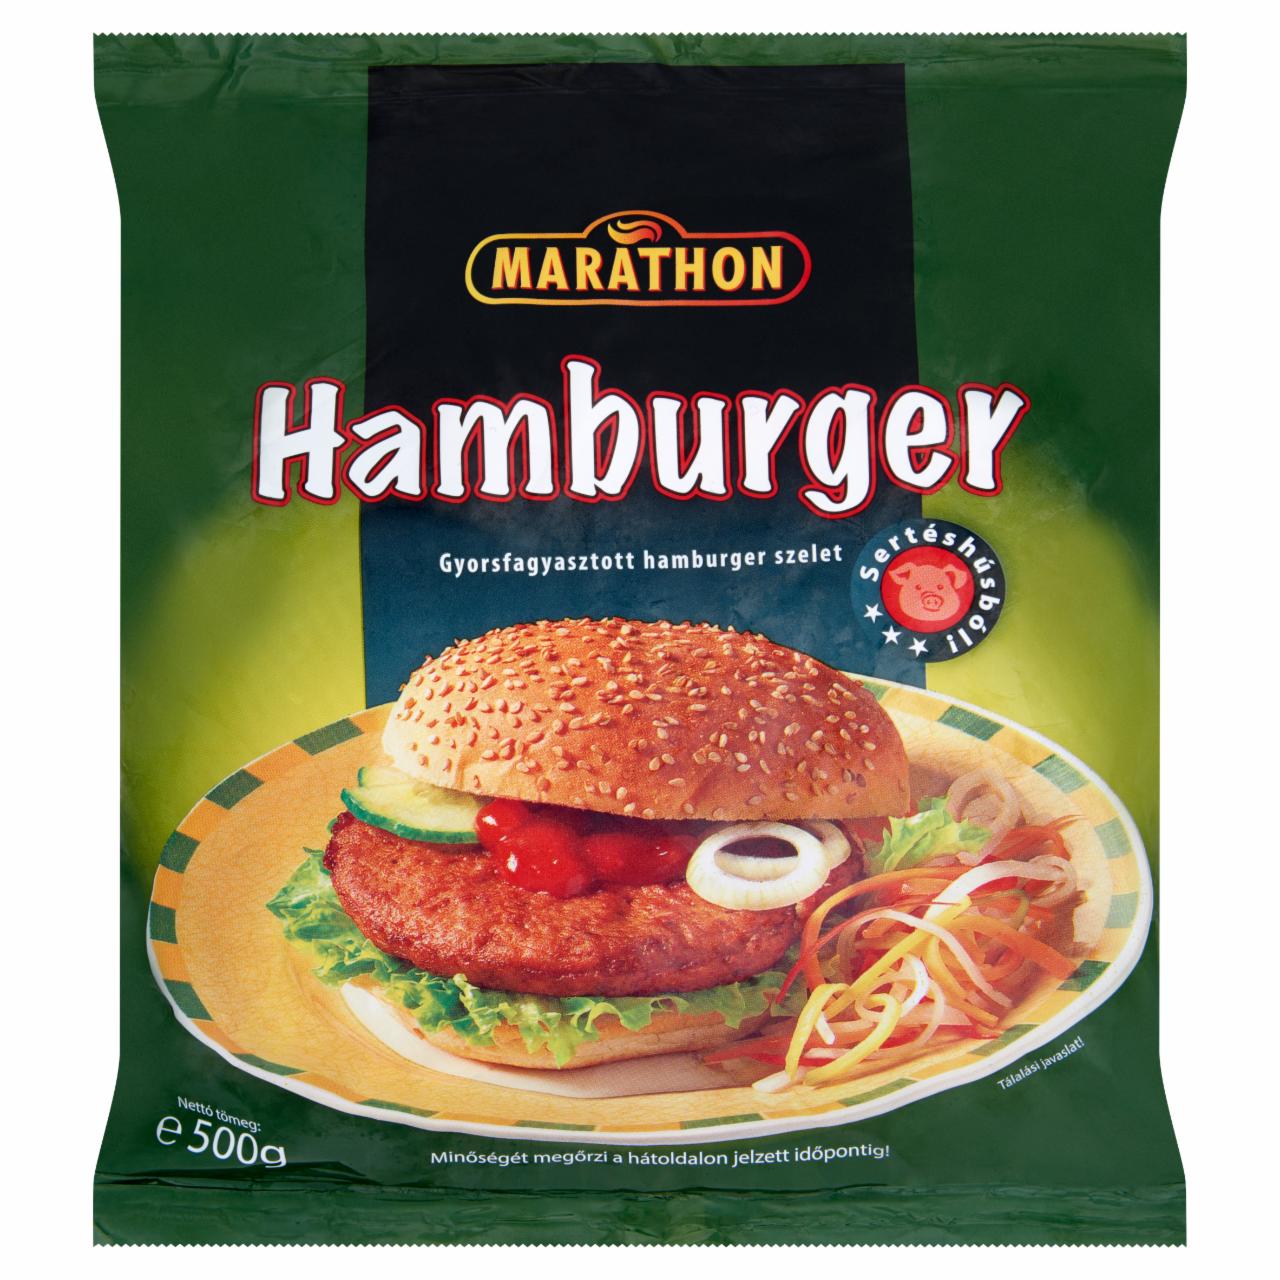 Képek - Marathon gyorsfagyasztott hamburger szelet 500 g